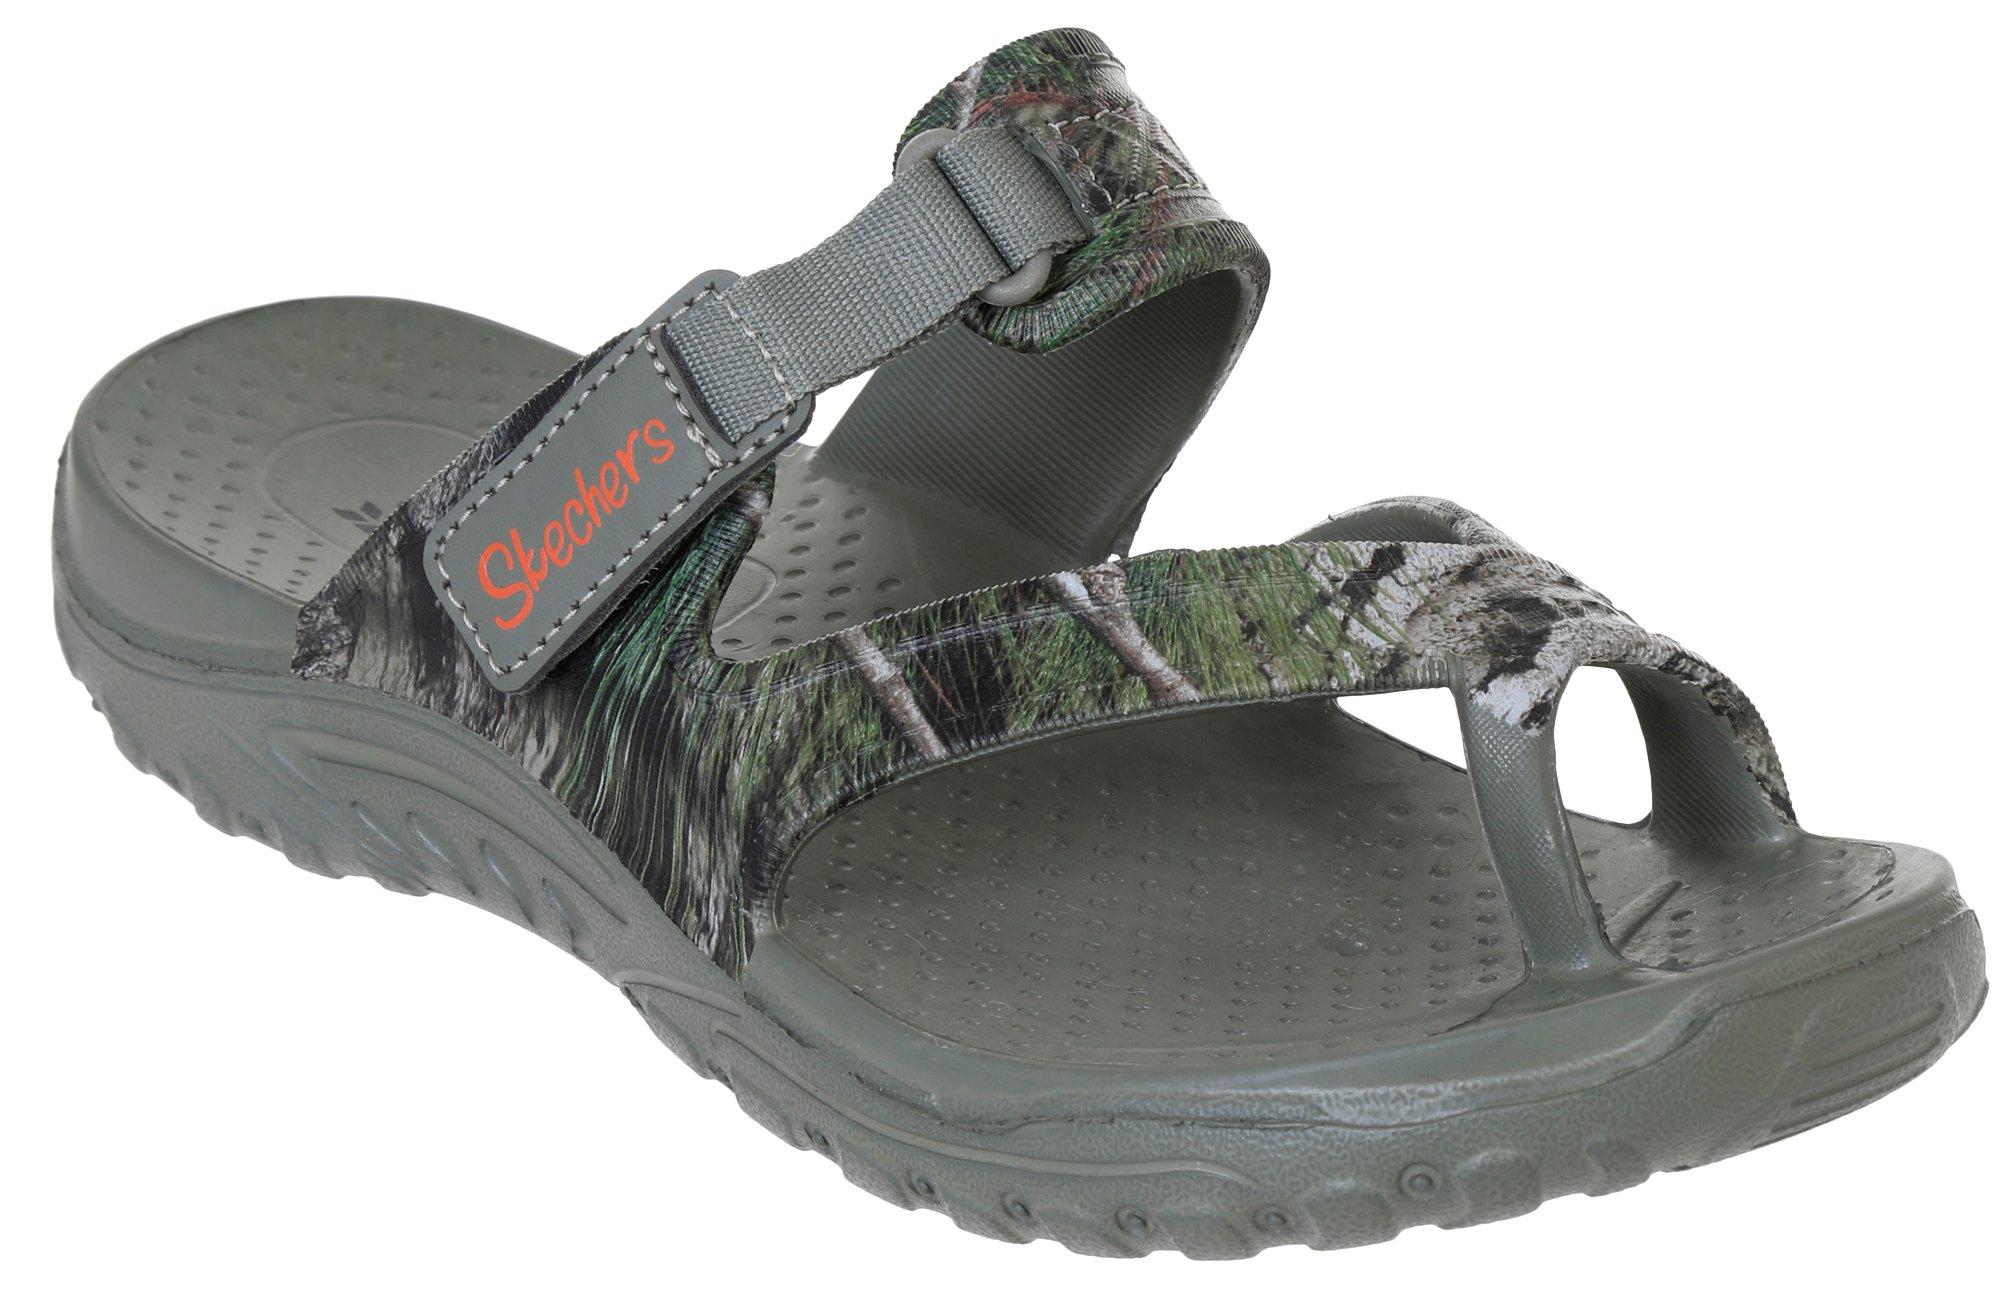 Women's Outdoor Camo Comfort Sandals - Green